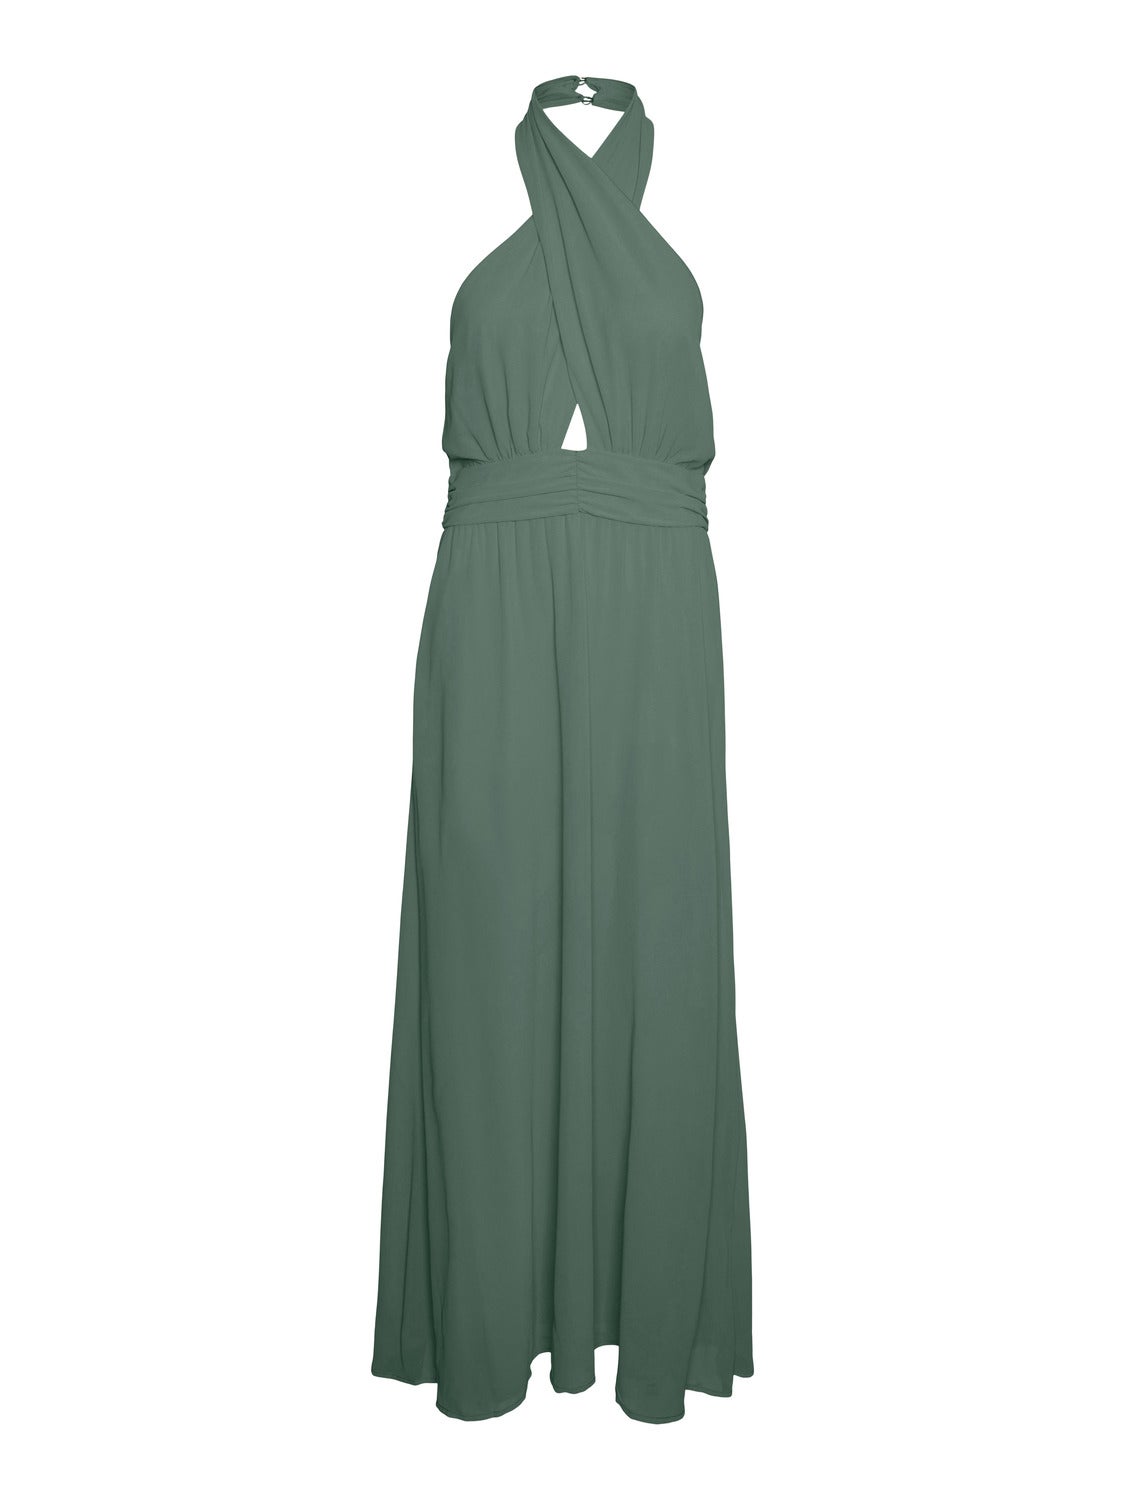 New VERO MODA Dress | Dress, Dress brands, Clothes design